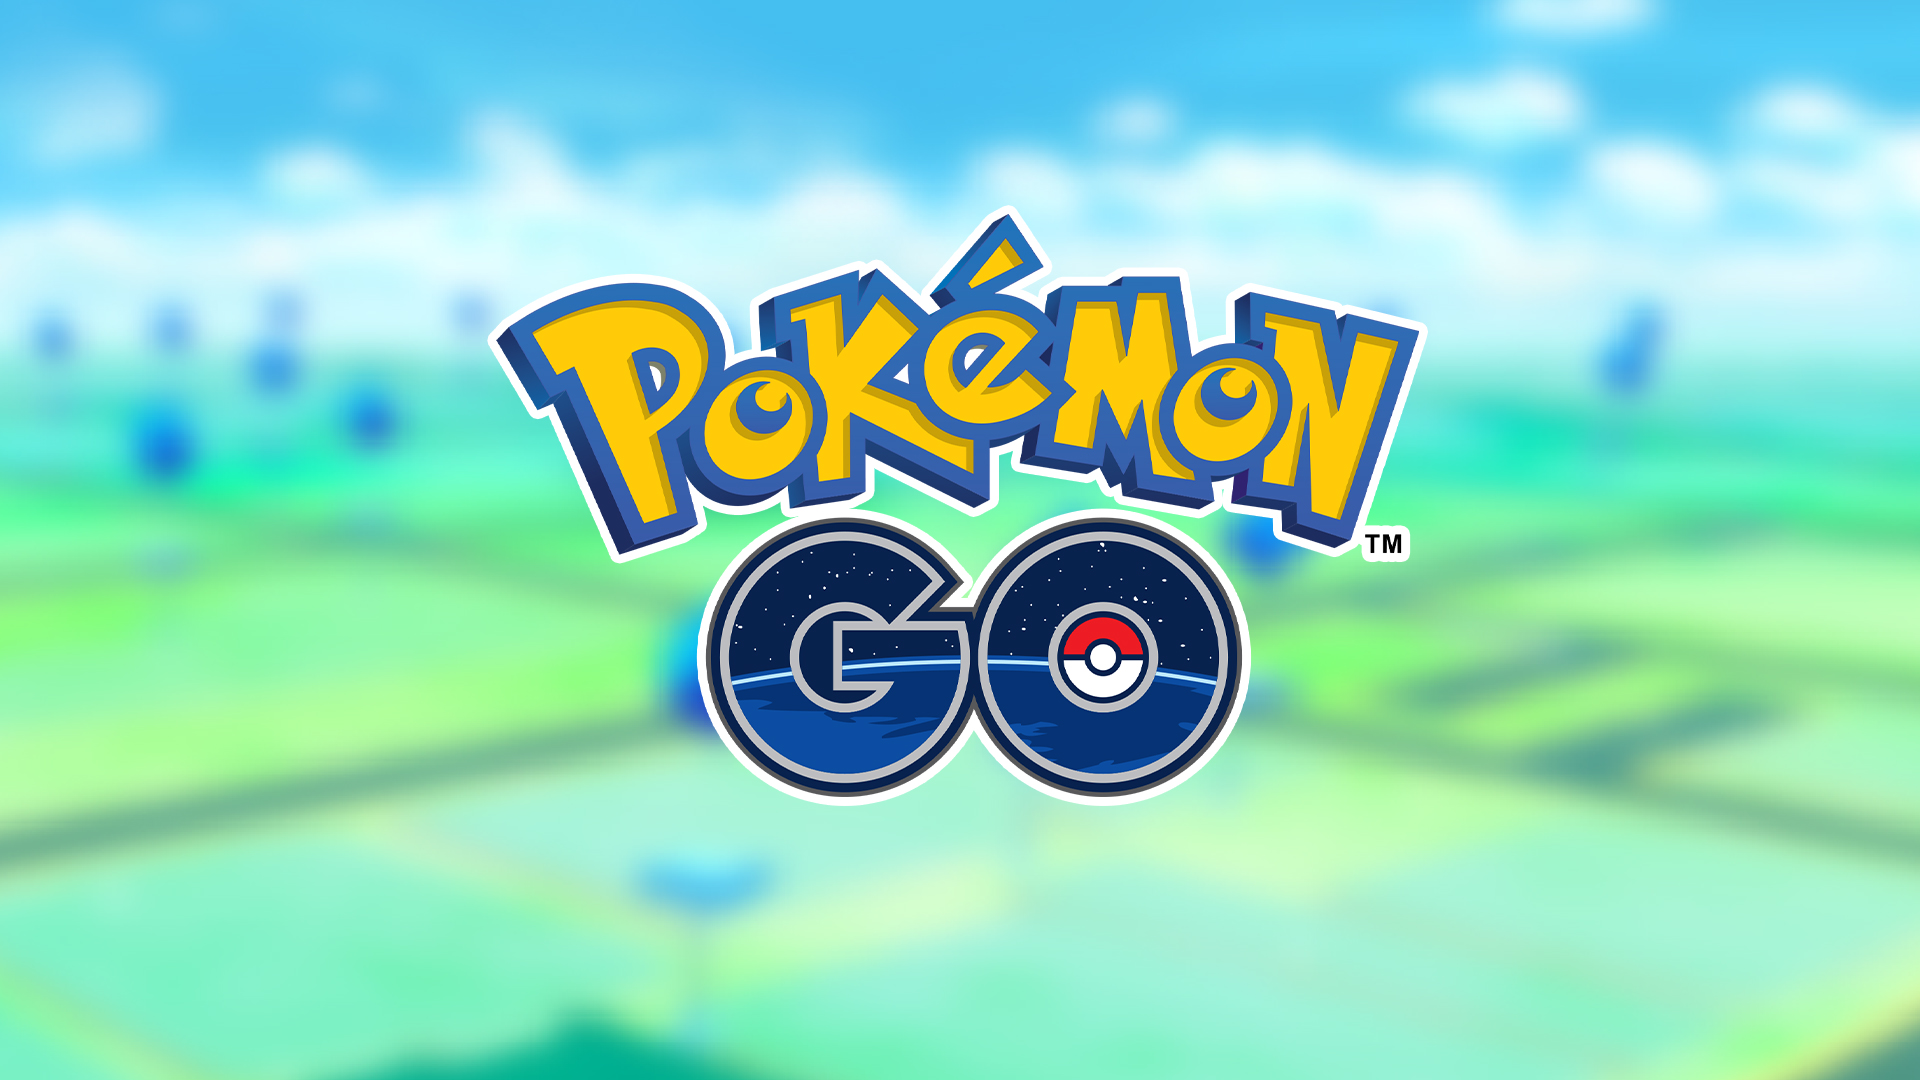 #Pokémon GO: Neue Funktion beim Fangen still und heimlich im Spiel verfügbar gemacht